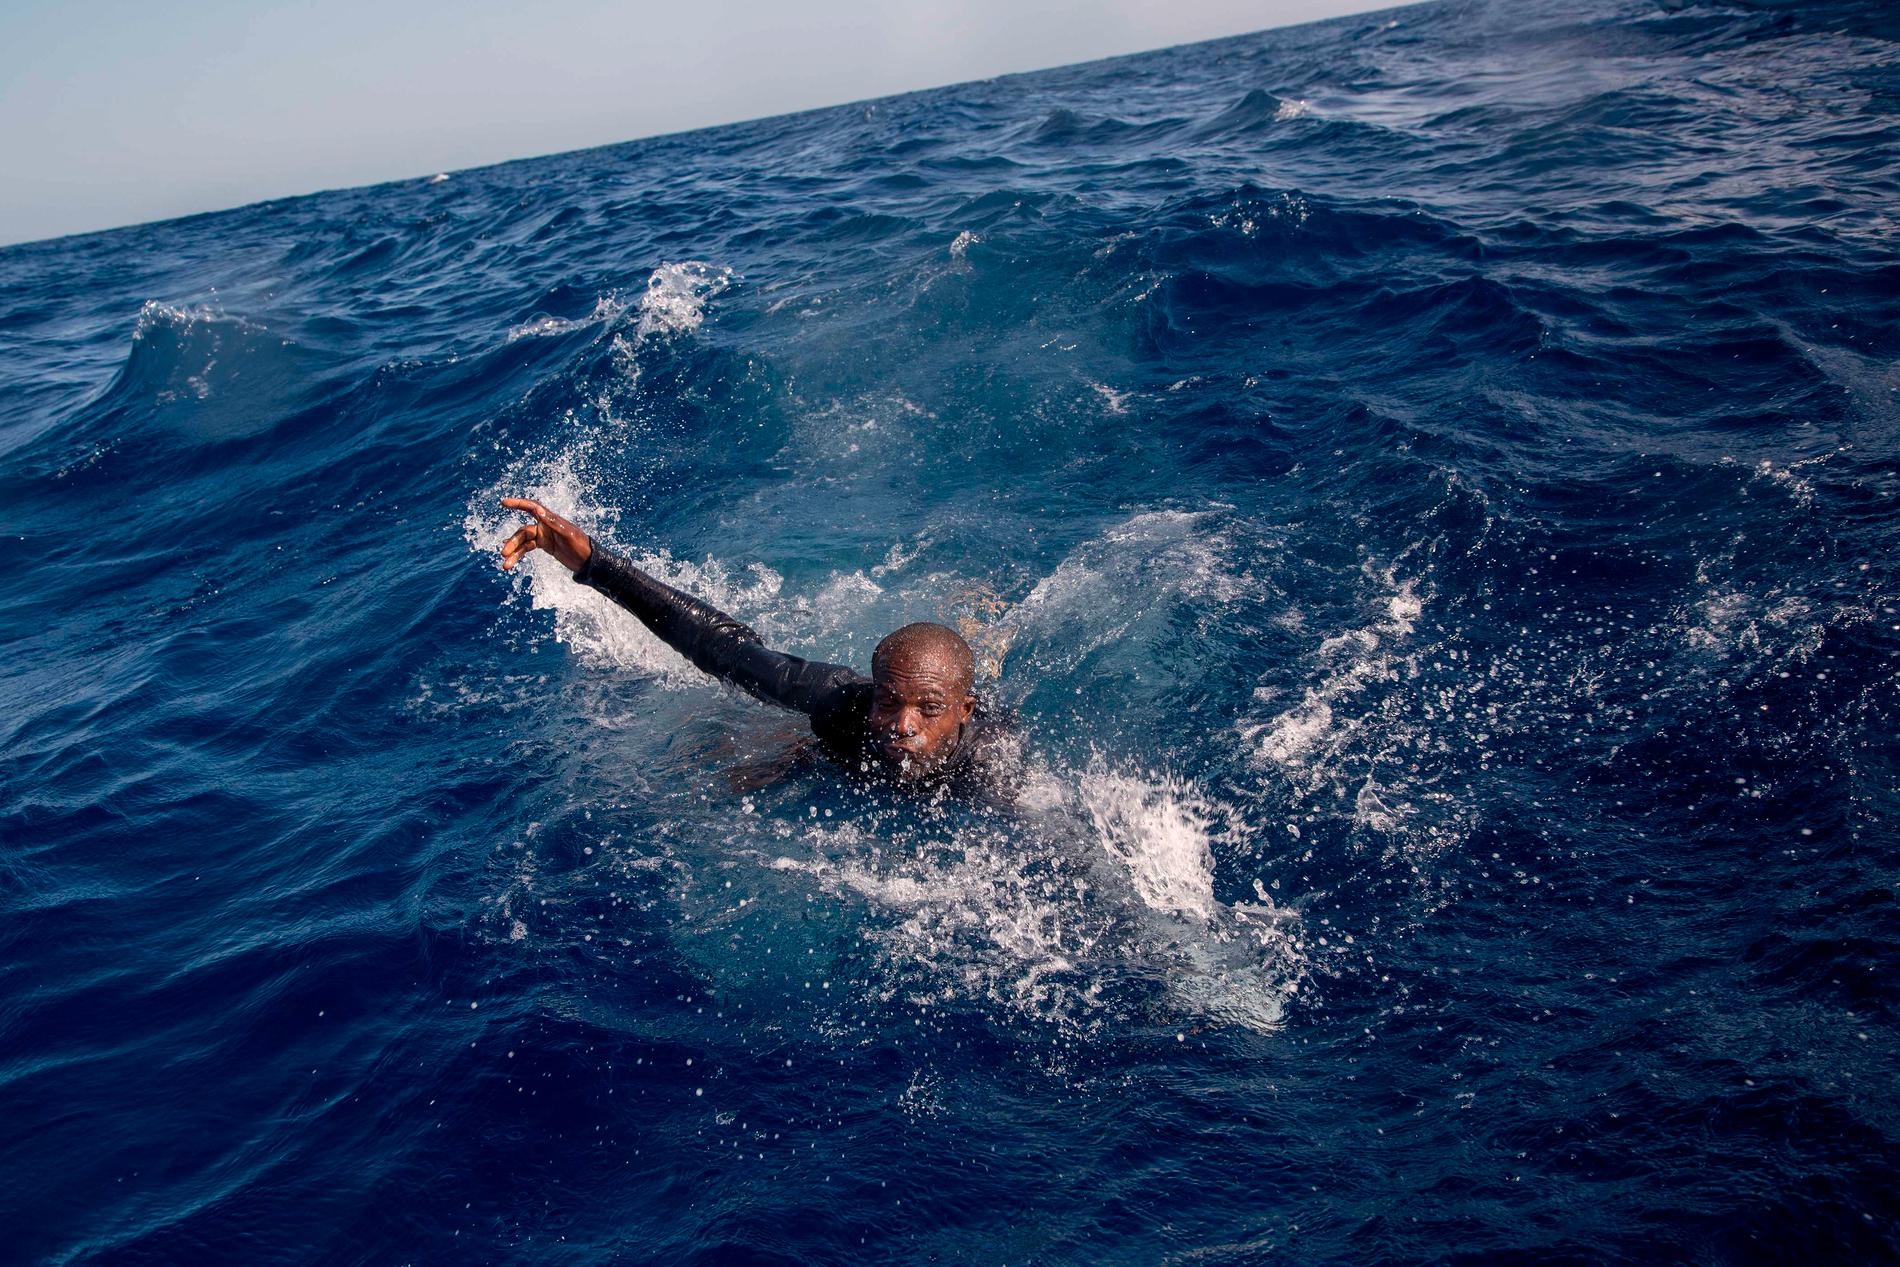 ”När jag tog den här bilden hörde jag hur han tappade andan i vattnet. Jag hör fortfarande det ljudet i mitt huvud.”, säger fotografen Alessio Paduano till BBC.